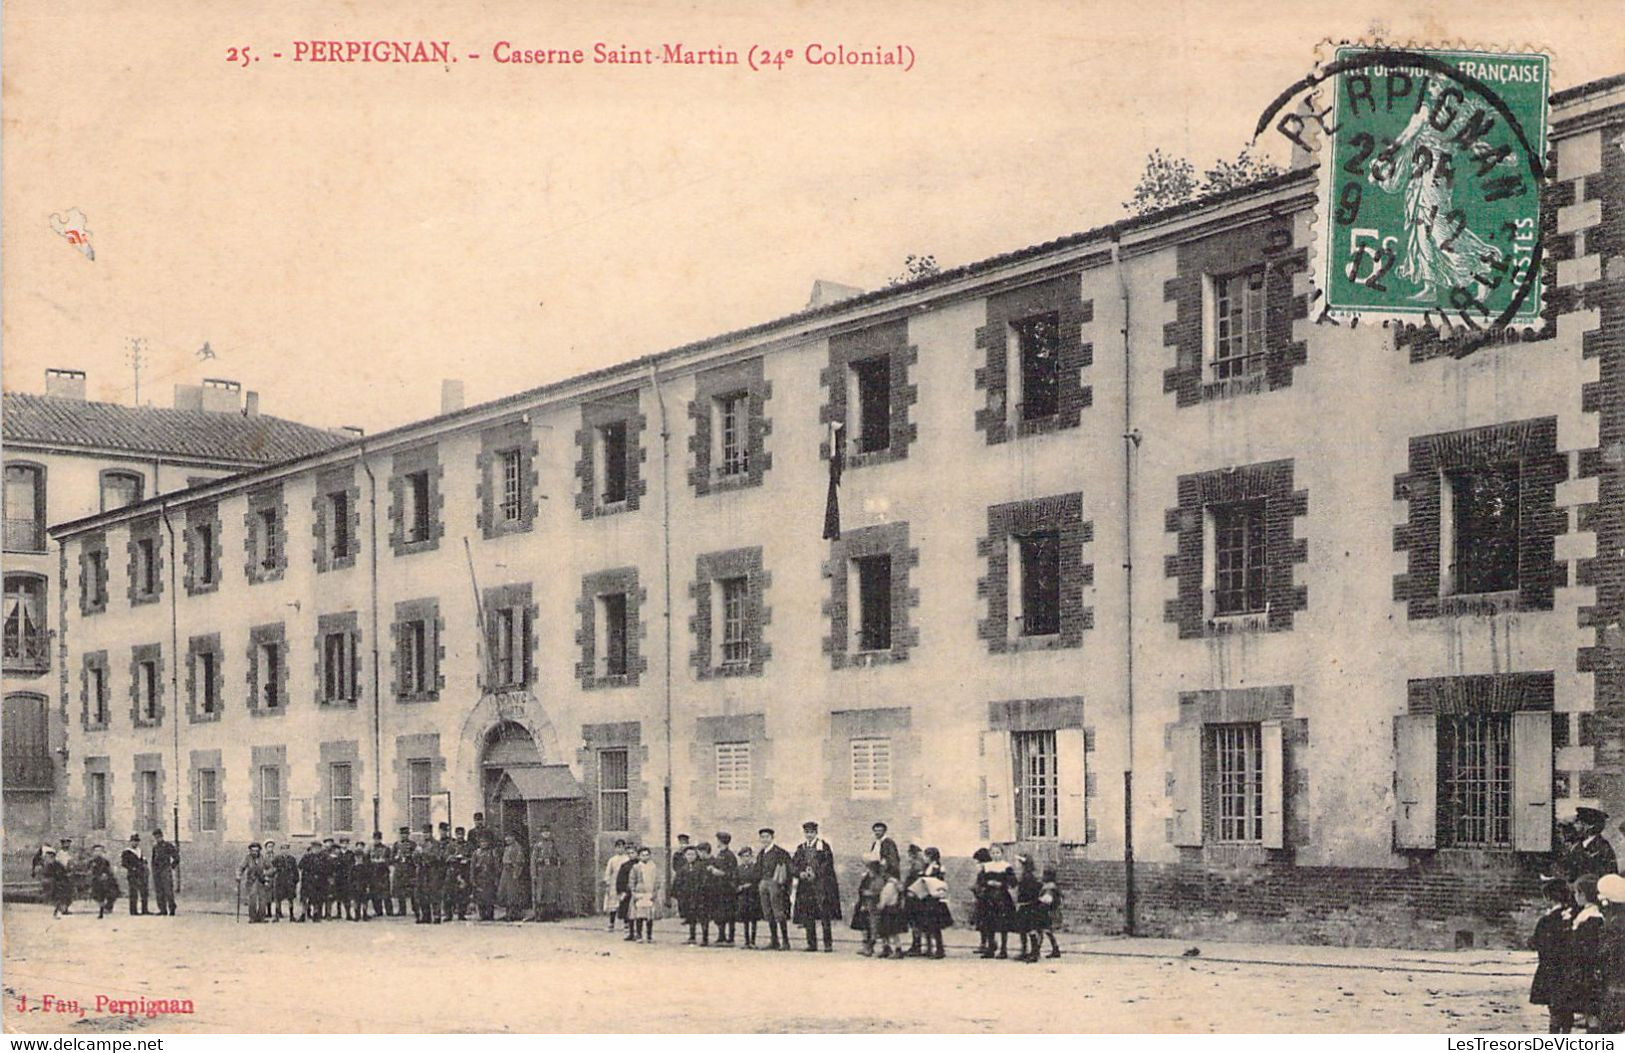 MILITARIA - PERPIGNAN - Caserne Saint Martin - 24è Colonial - J Fau Perpignan - Carte Postale Ancienne - Casernes